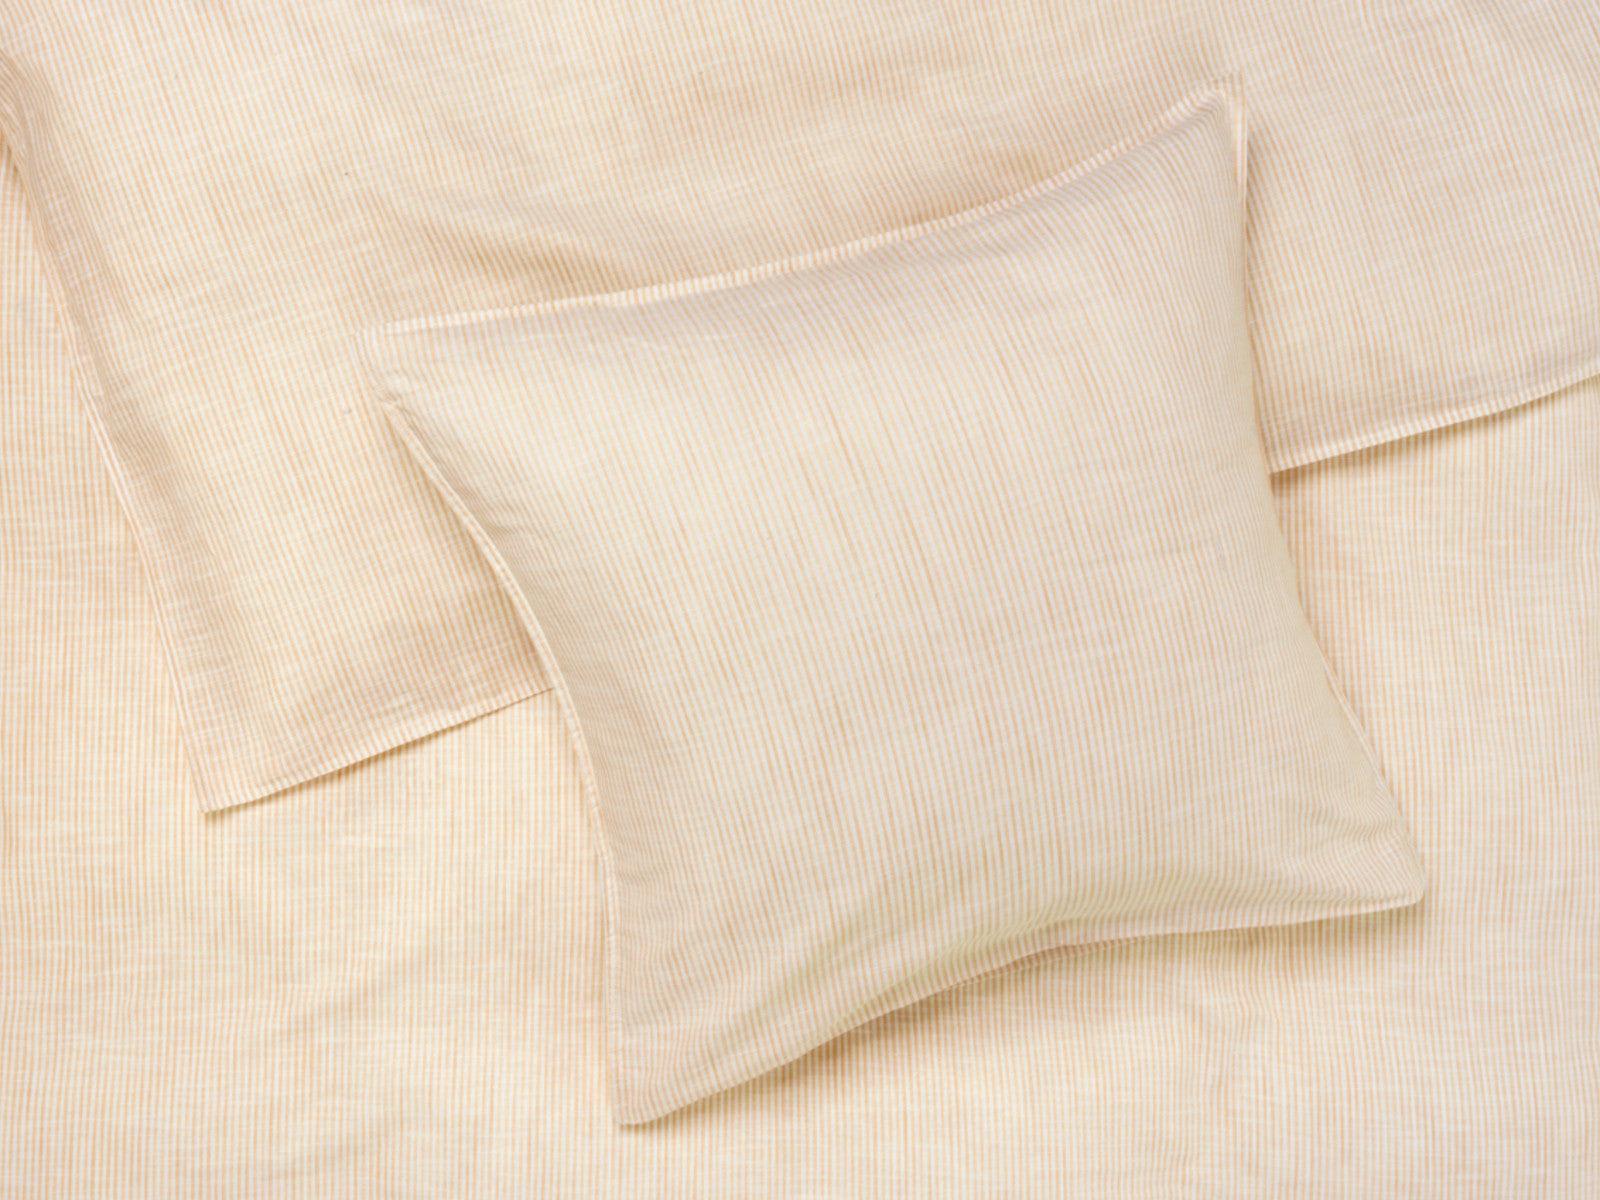 Juna sengetøj Monochrome lines okker/hvid 140x200cm